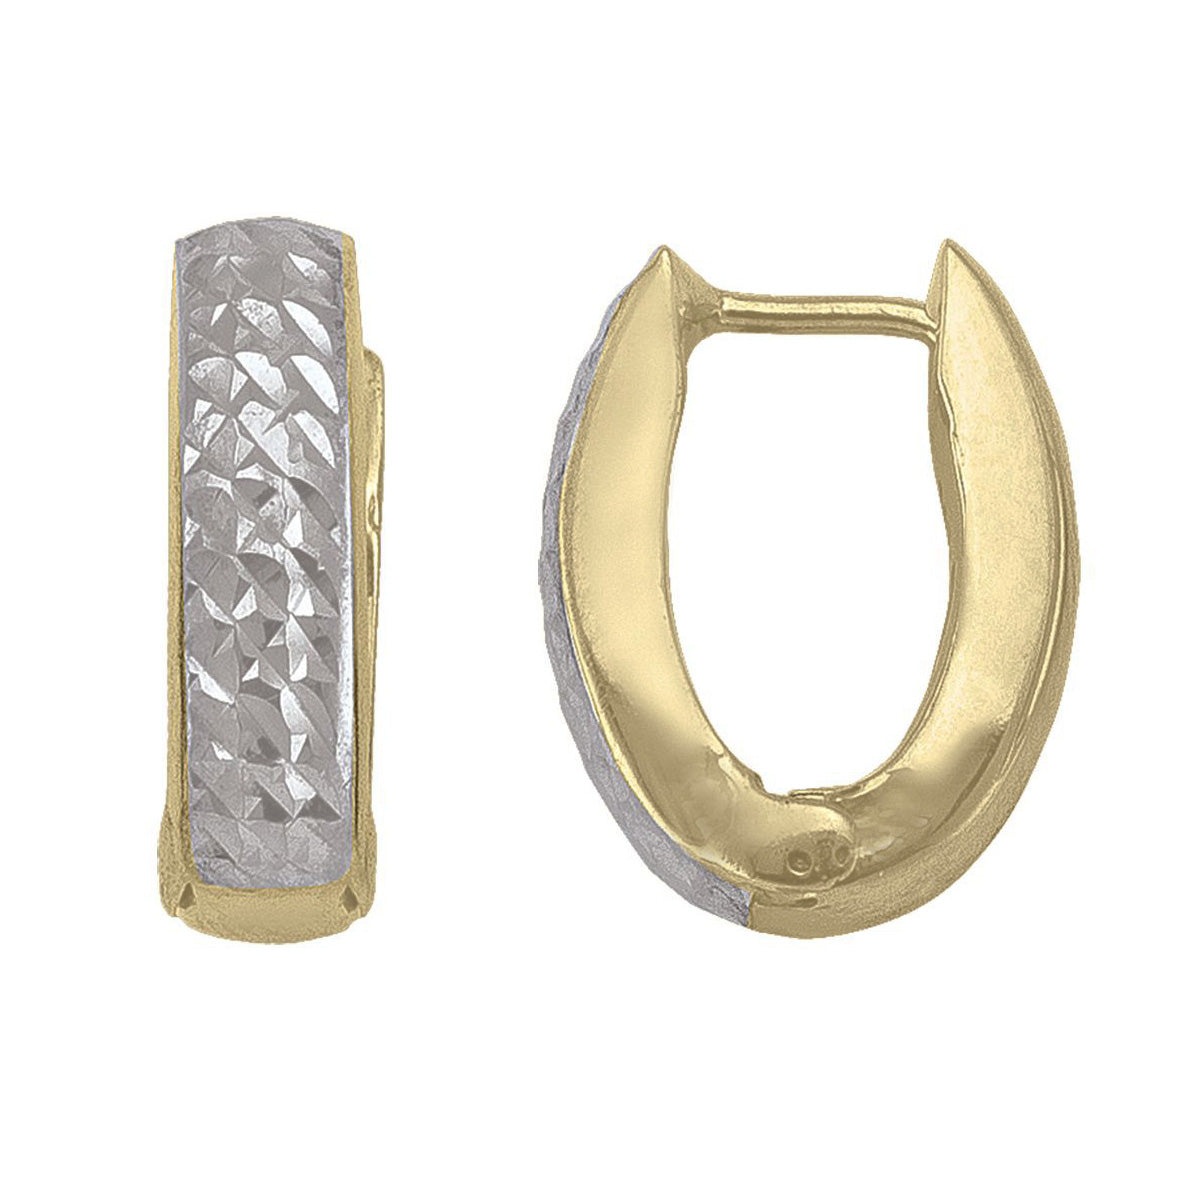 EHG0115, Gold Earrings, Huggies, 4.6 mm Tubing